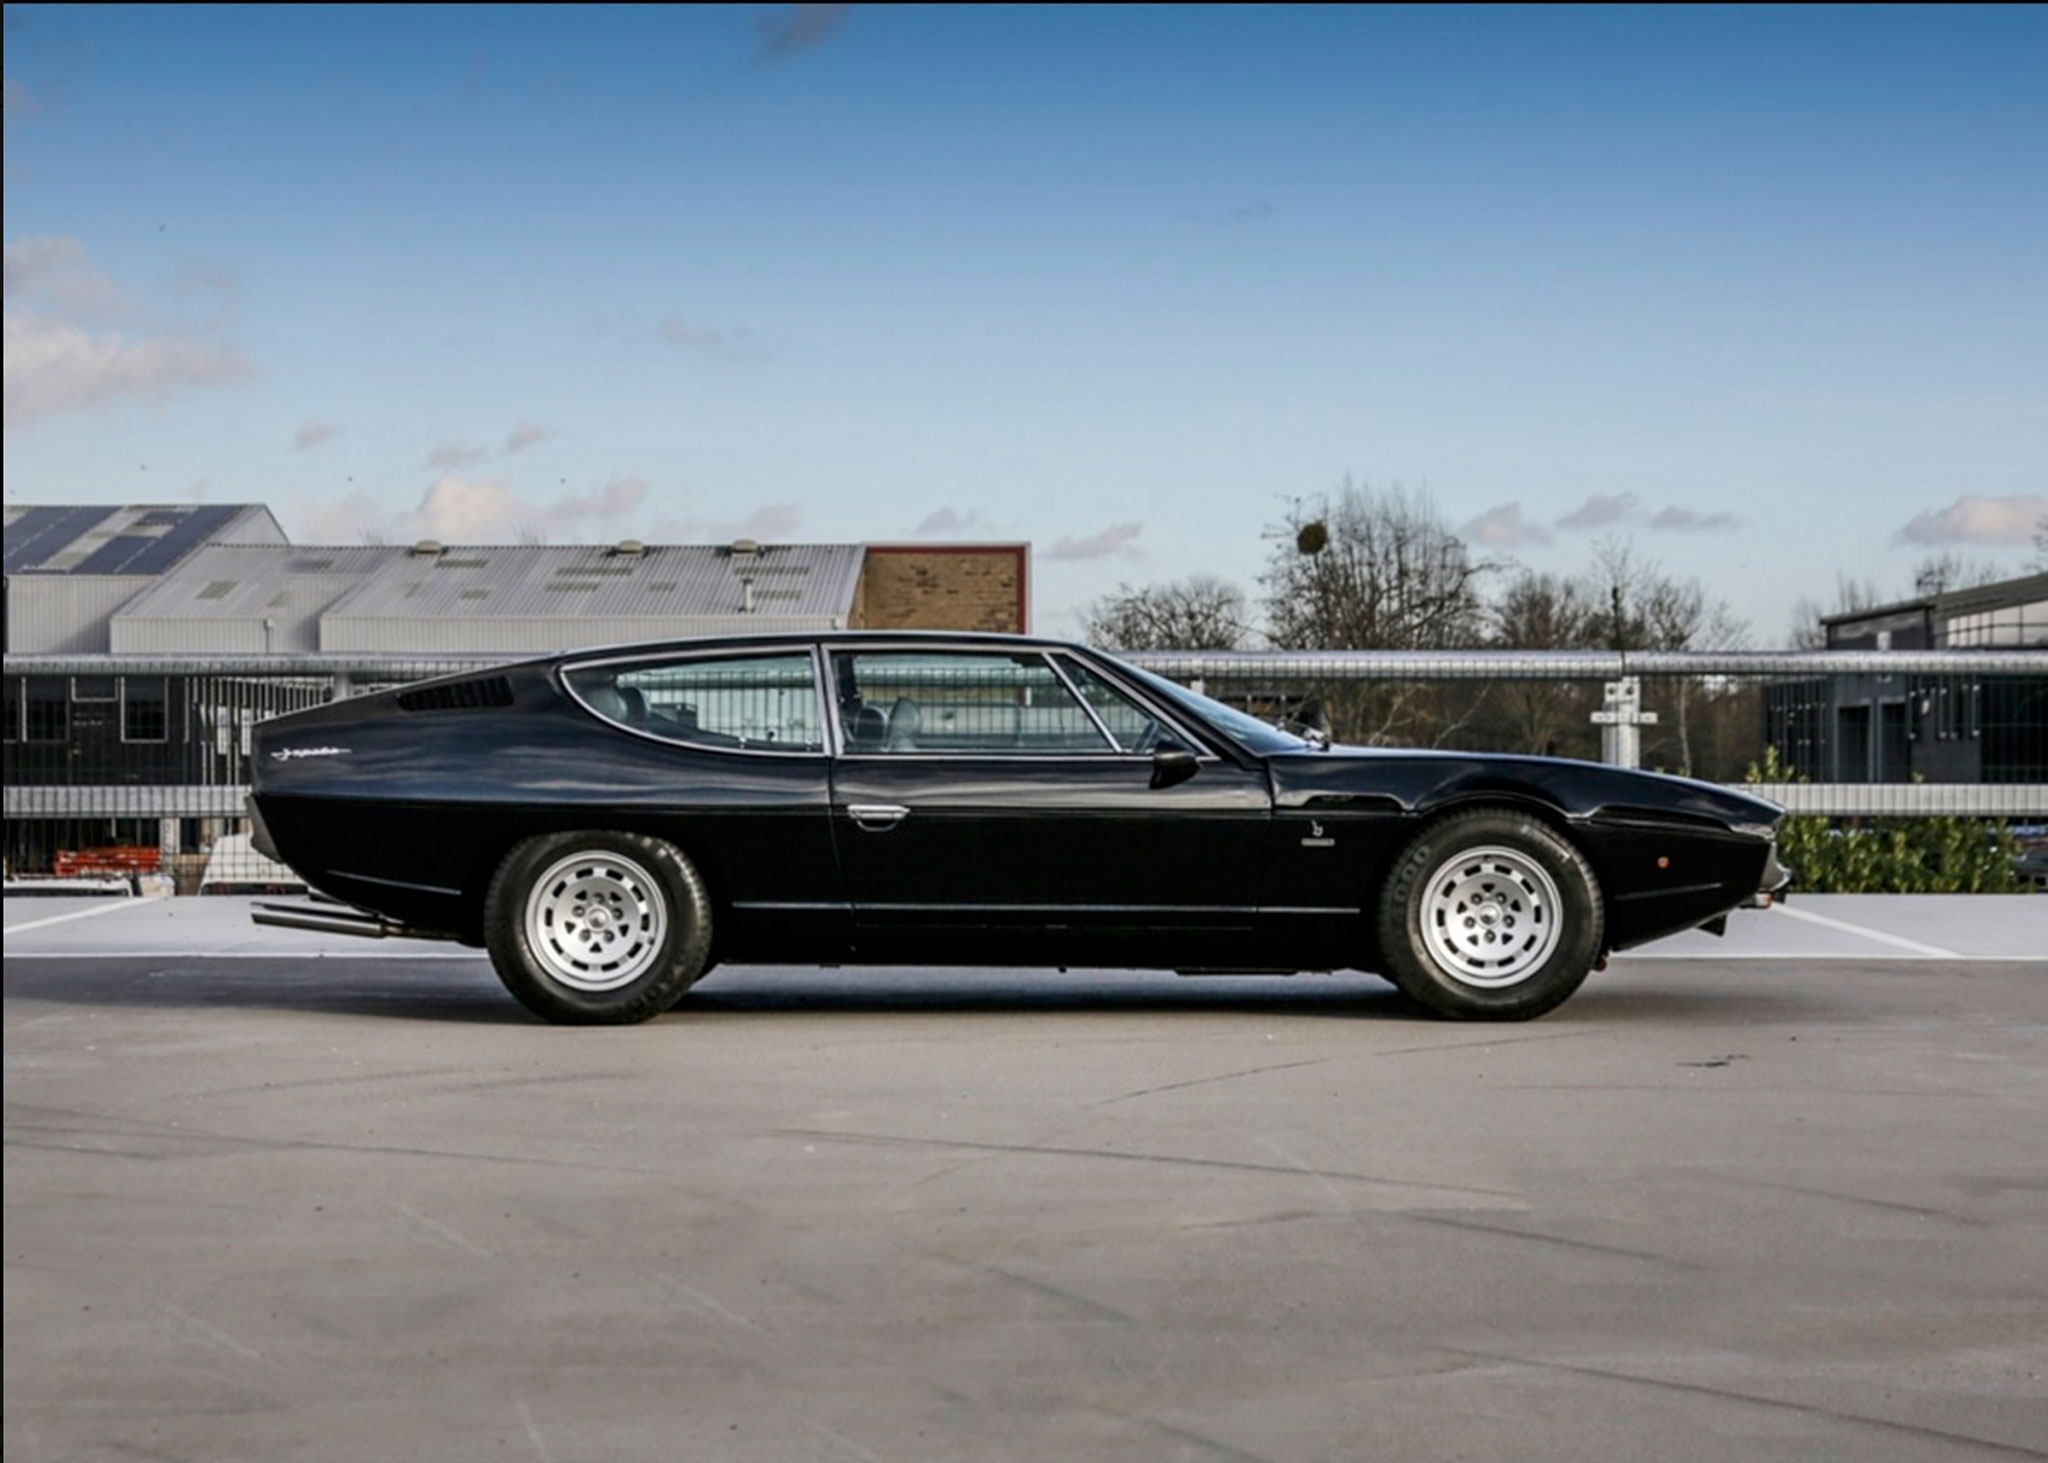 1976 Lamborghini Espada Série 3 une ligne très basse et une lunette arrière presque horizontale - Ascot Racecourse avril 2021.